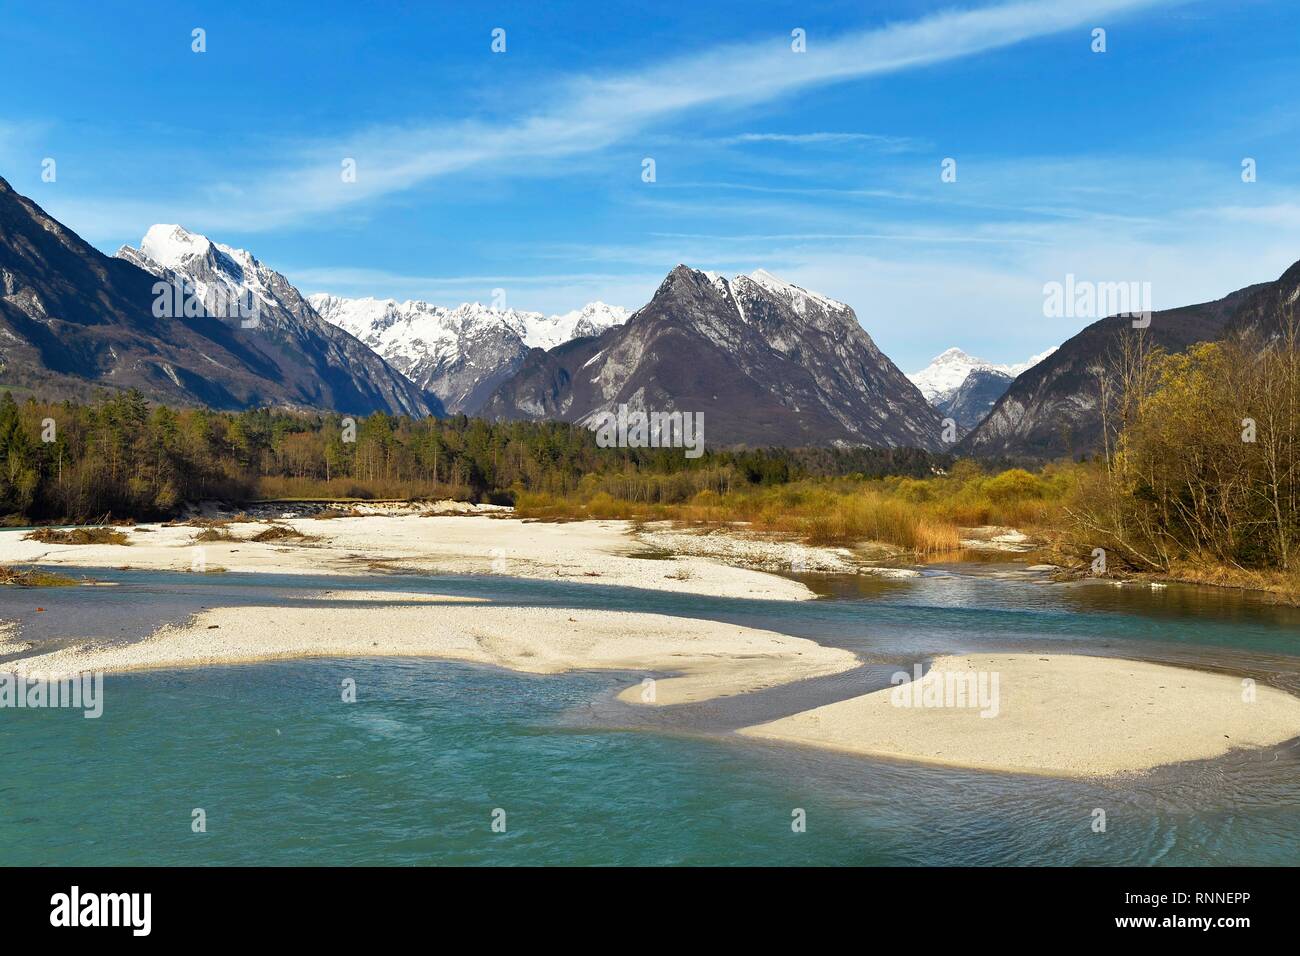 Mountain river Soca, behind snow-covered Kanin mountains, Bovec, Soca valley, Julian Alps, Slovenia Stock Photo